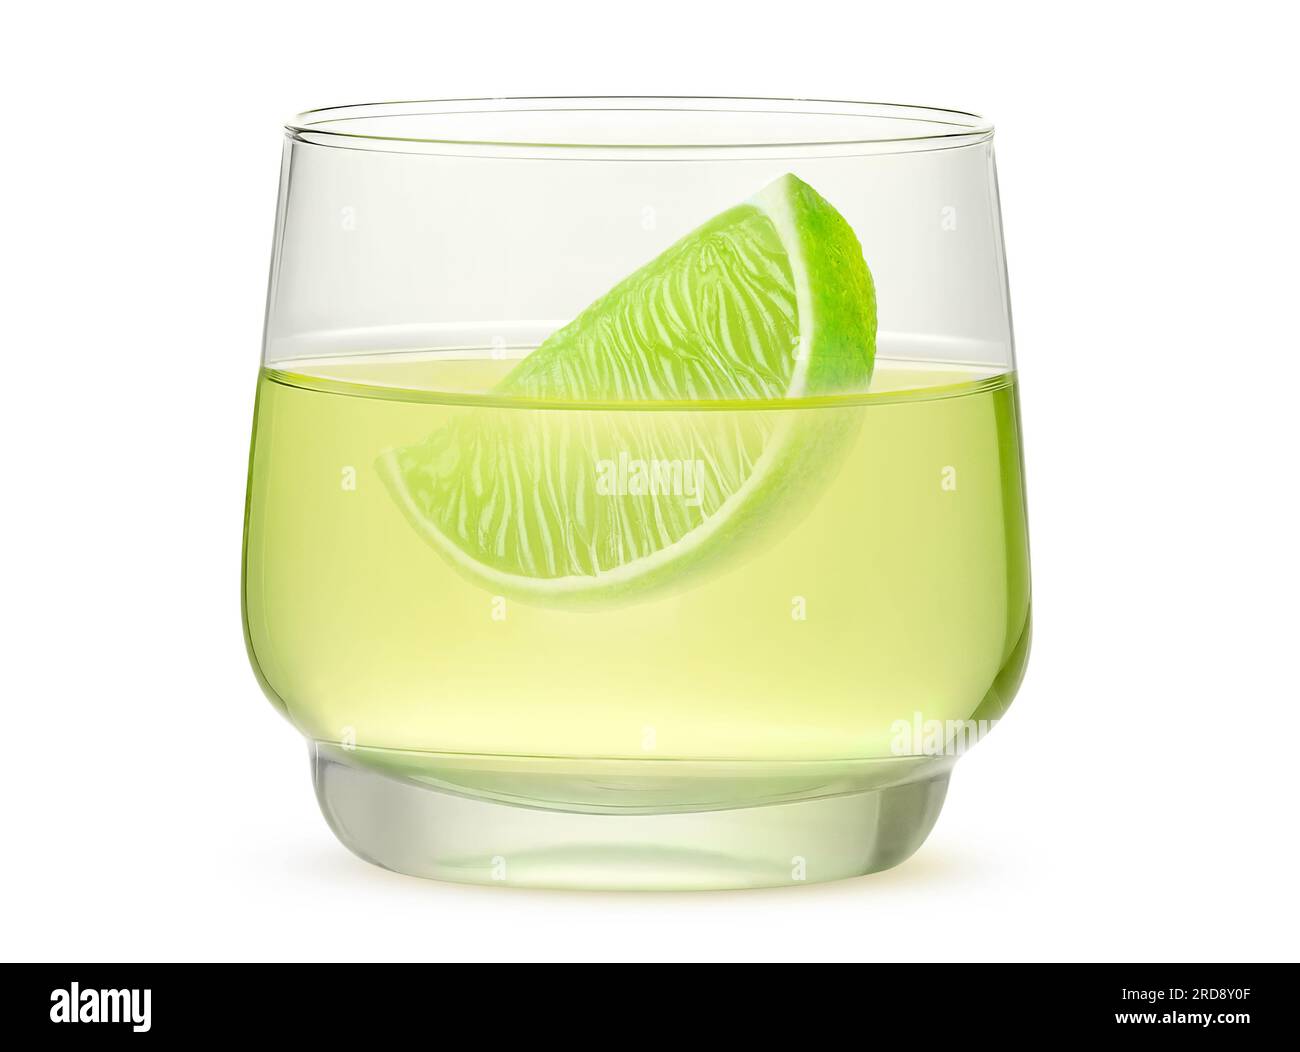 Un verre de boisson de citron vert et une tranche de fruits de citron vert, isolé sur fond blanc Banque D'Images